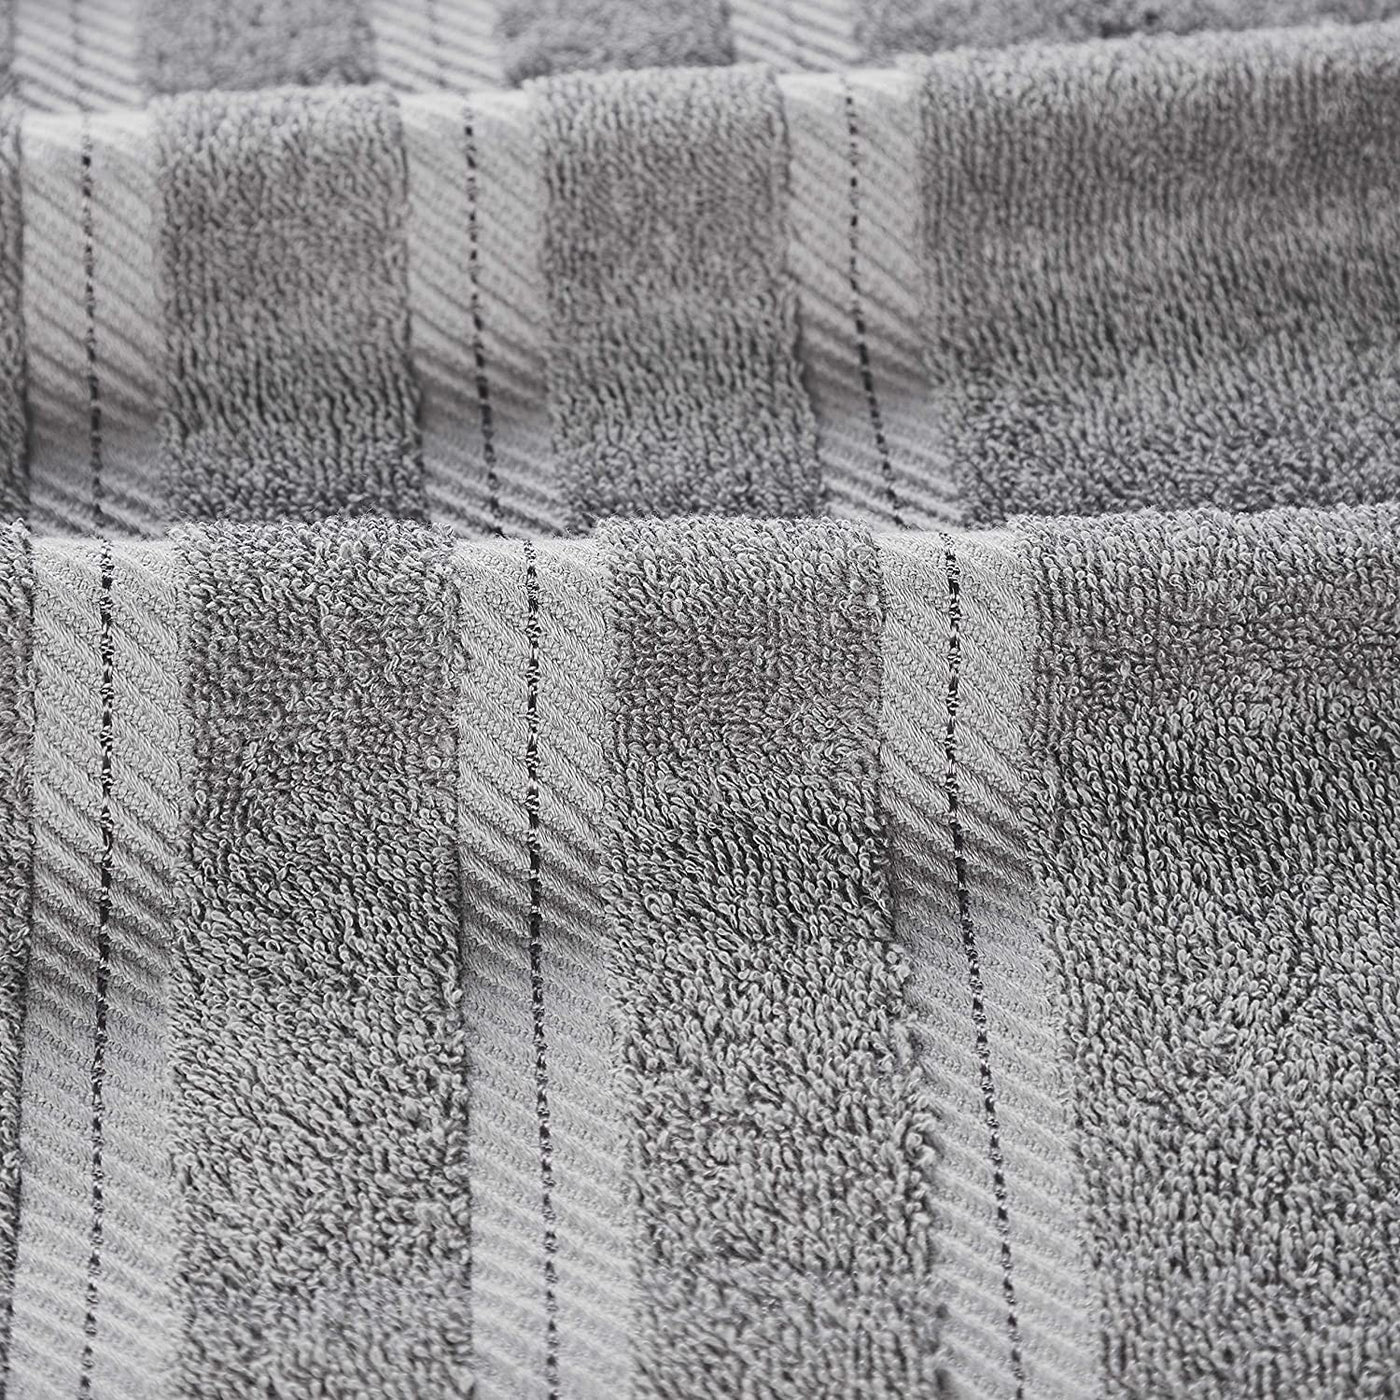 Classic Cotton Towels 8 Piece Set (Light Grey)